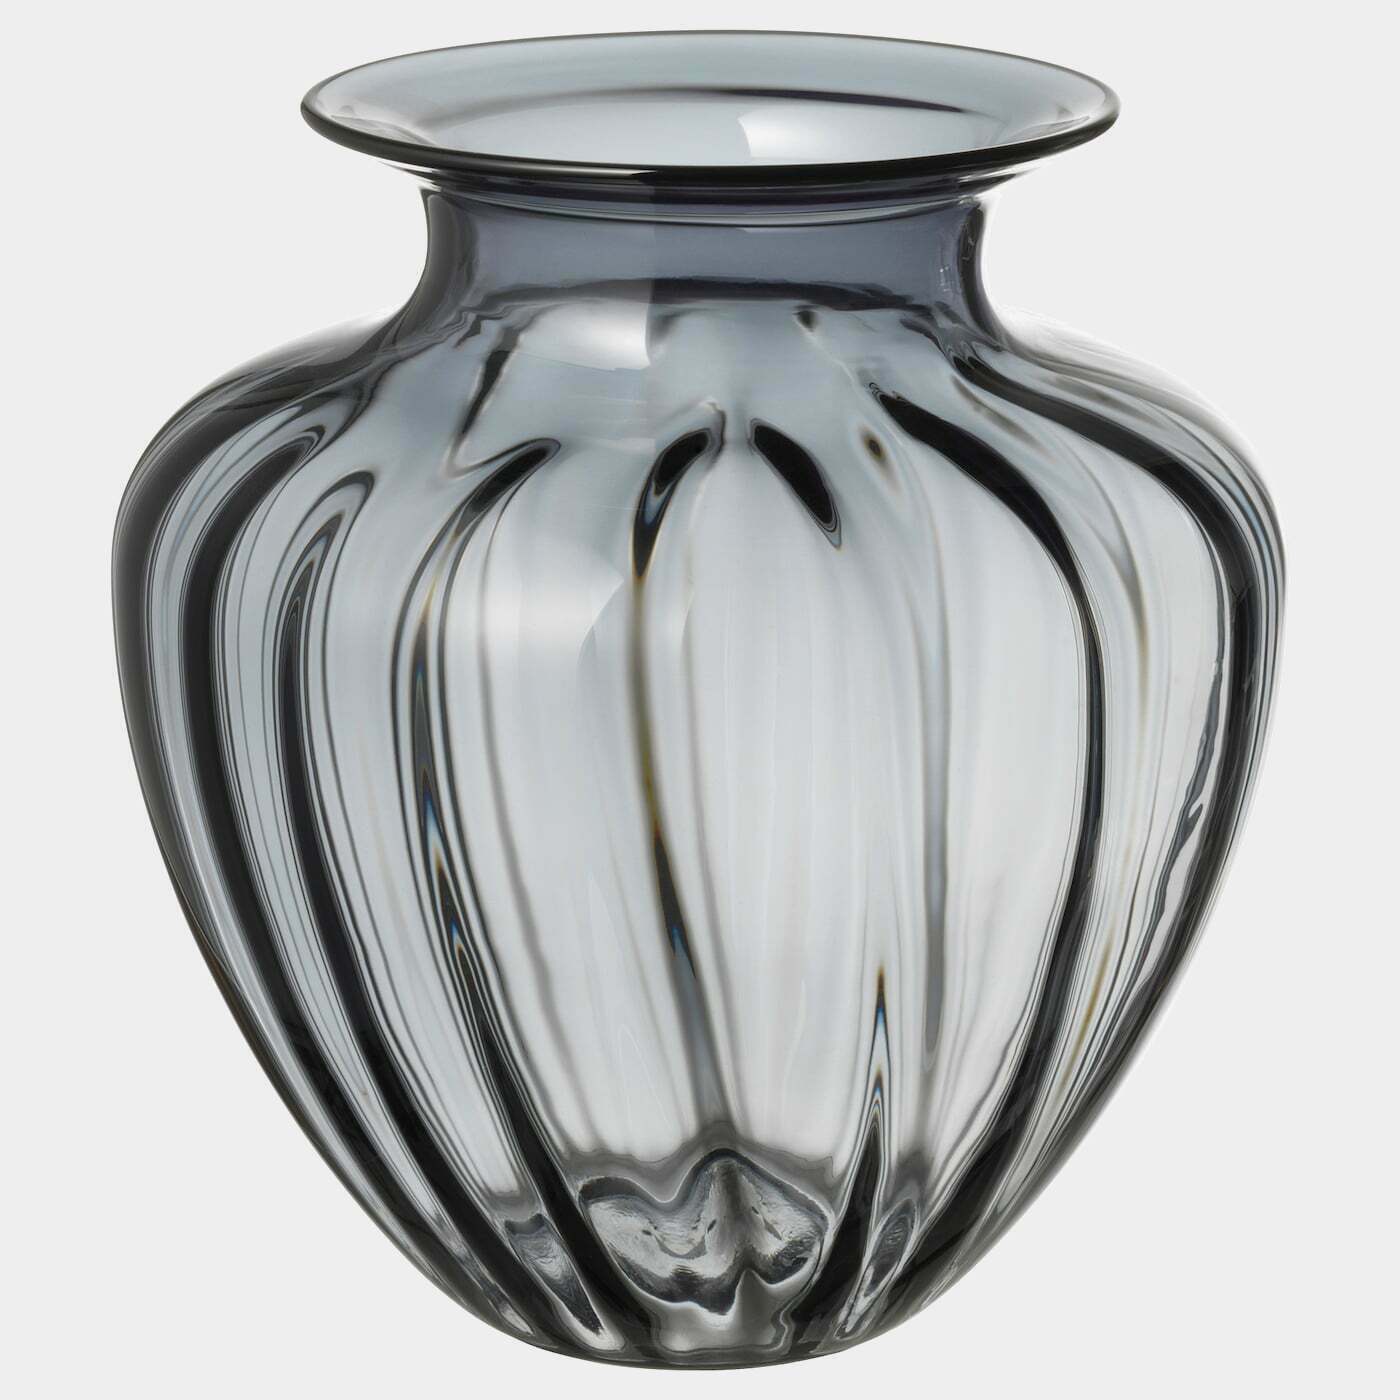 TONSÄTTA Vase  - Vasen - Dekoration Ideen für dein Zuhause von Home Trends. Dekoration Trends von Social Media Influencer für dein Skandi Zuhause.